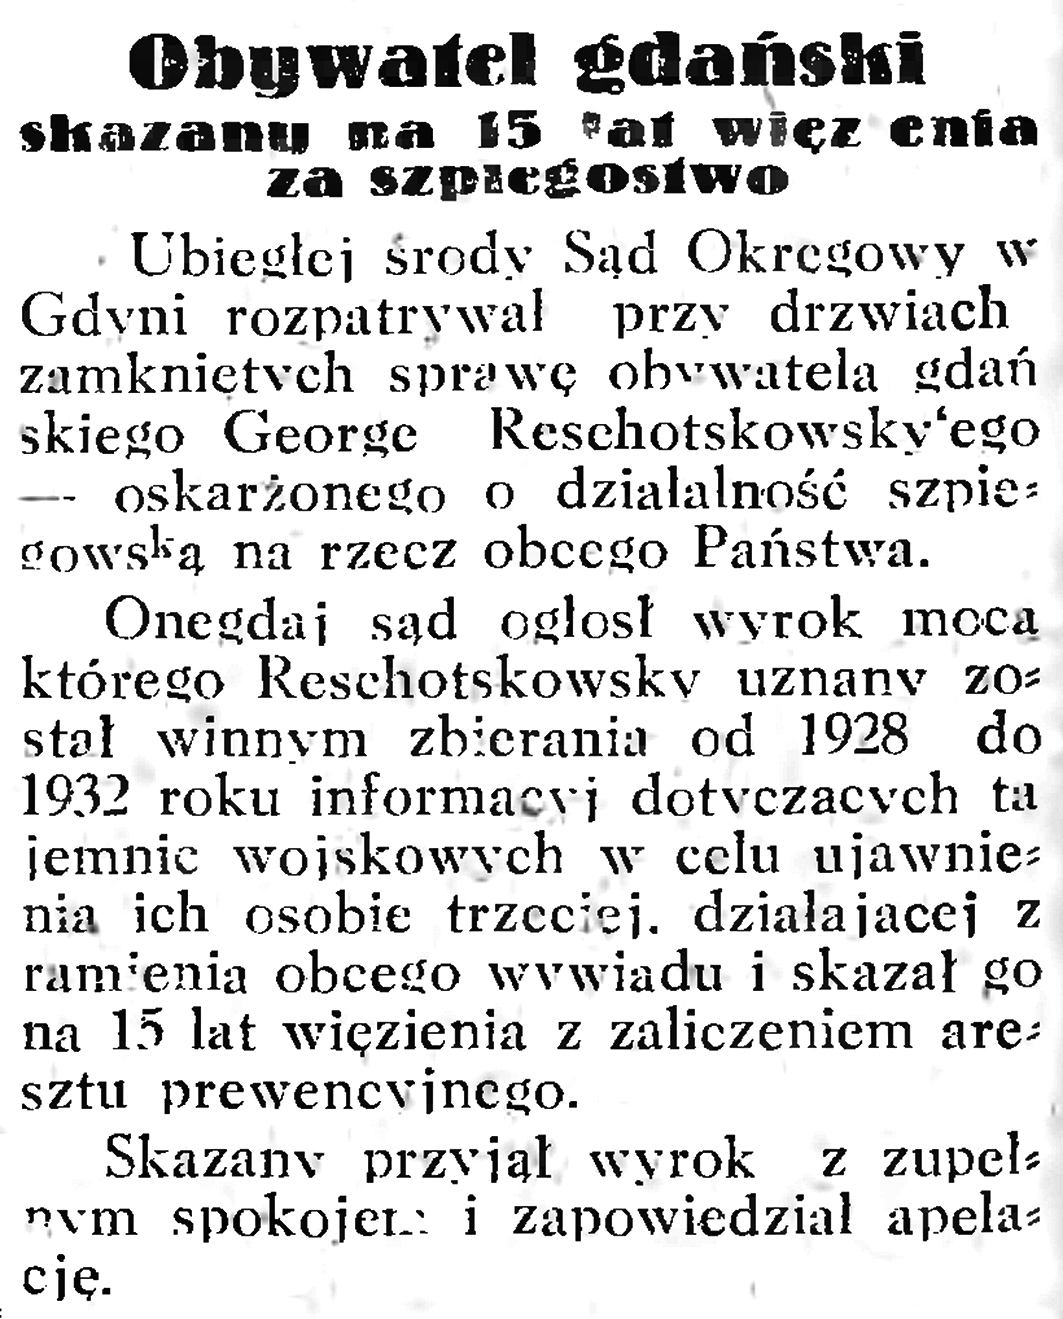 Obywatel gdański skazany na 15 lat więzienia za szpiegostwo // Gazeta Gdańska. - 1933, nr 6, s. 8